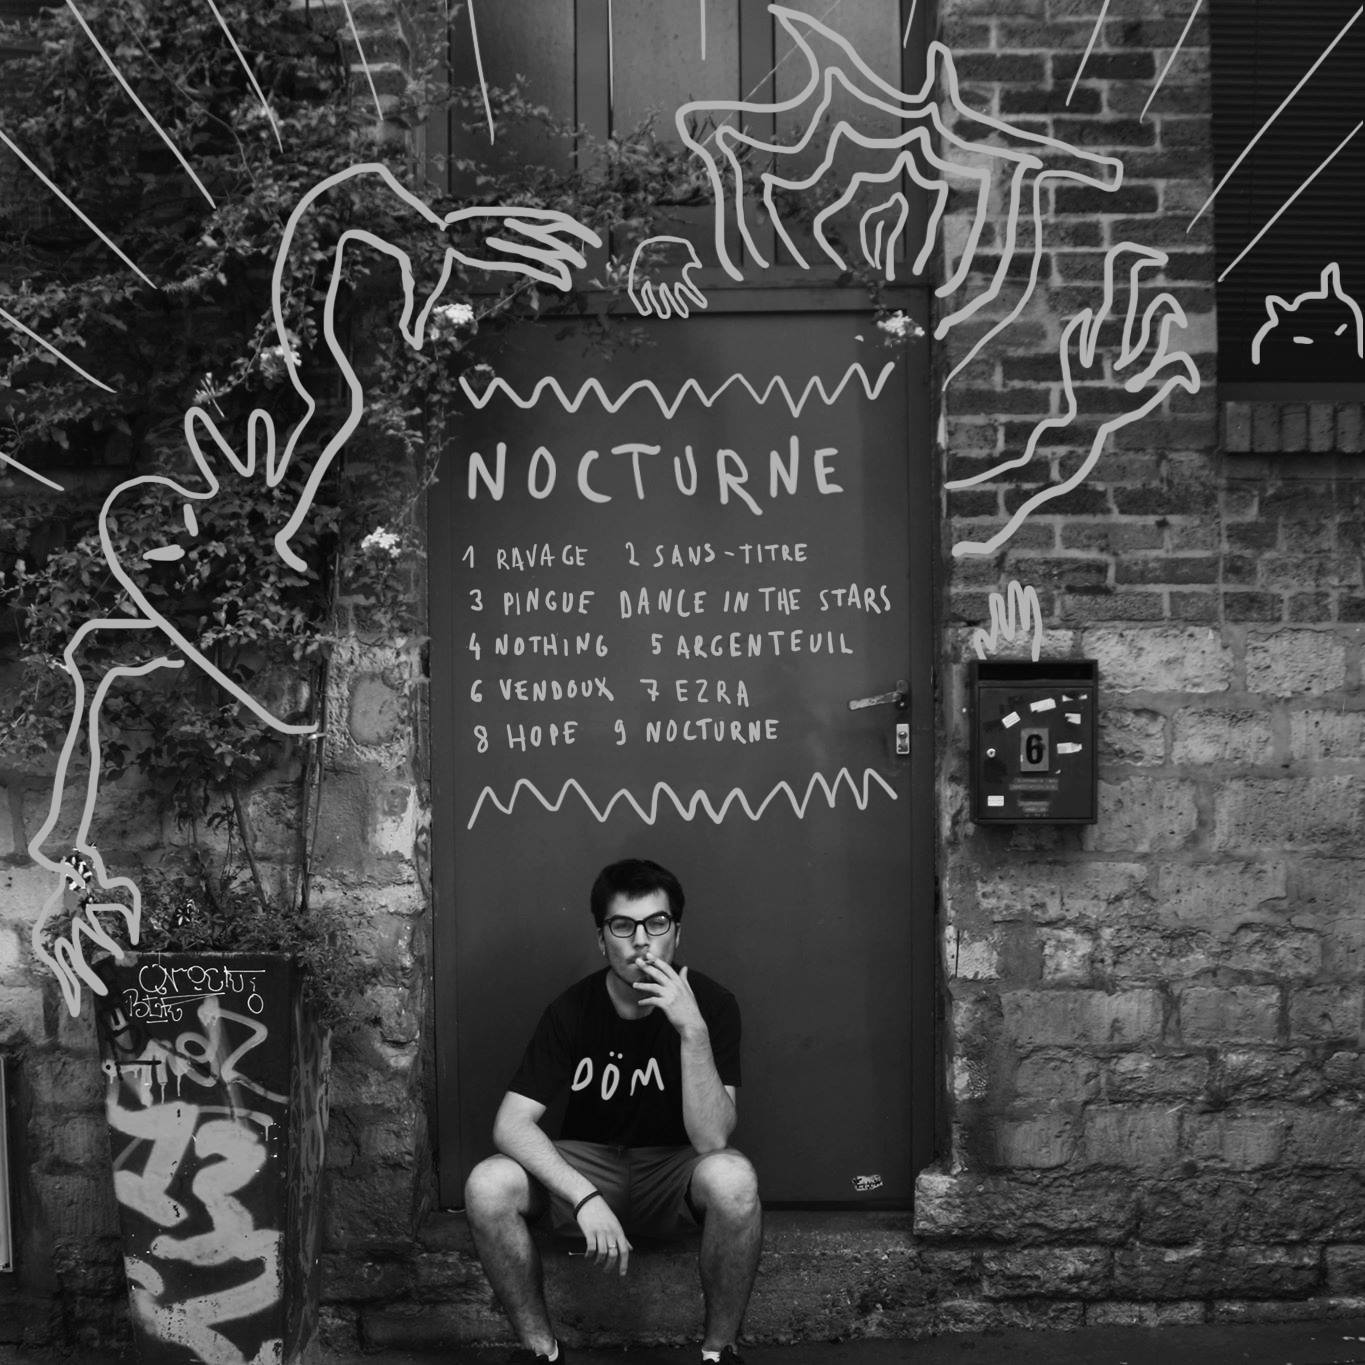 Pochette de l'album Nocturne de Döm